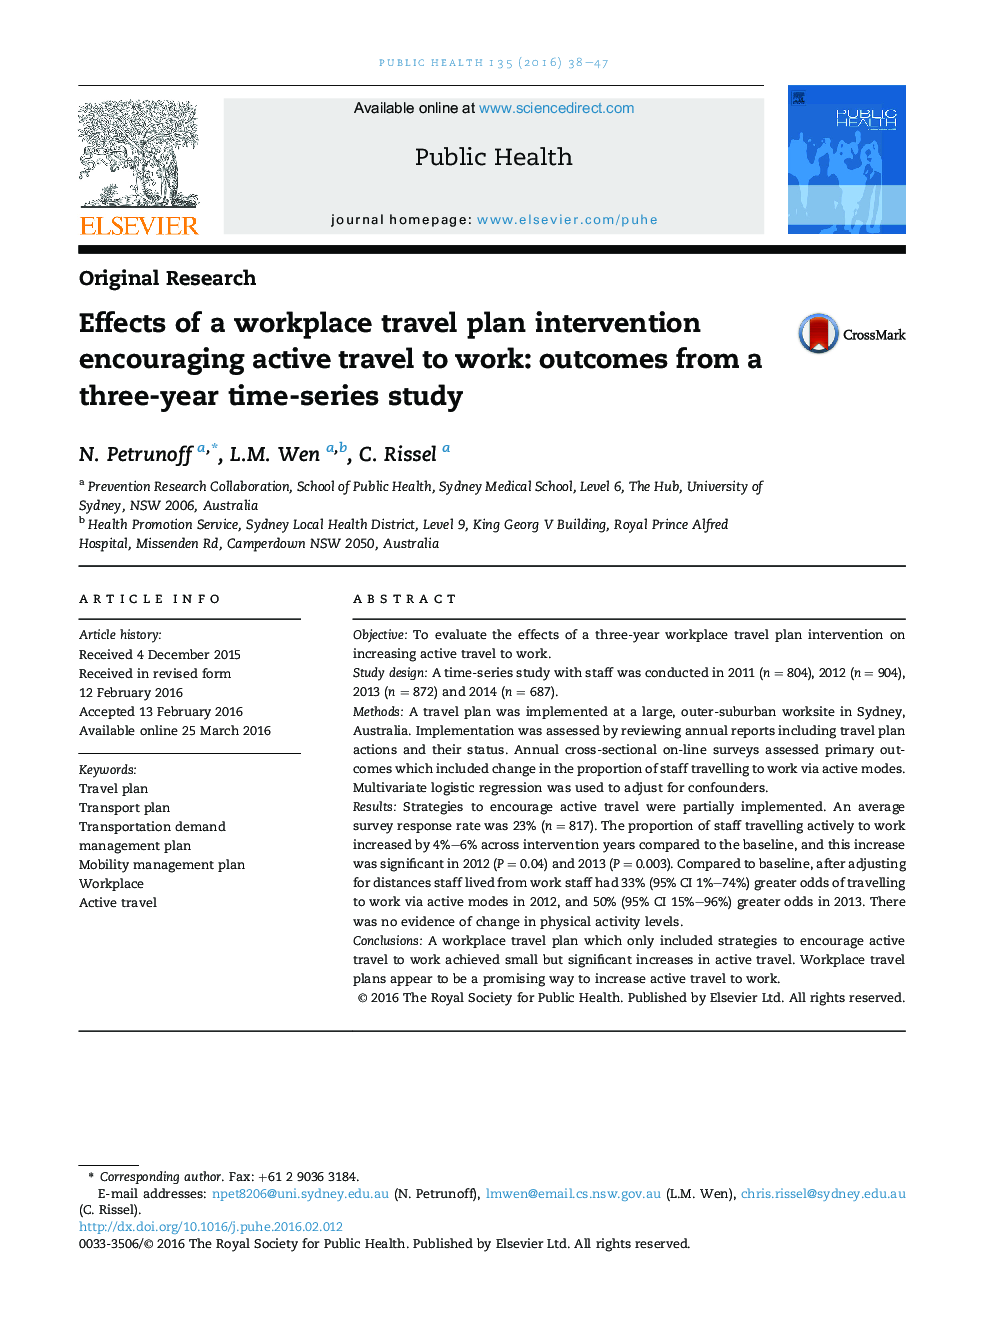 اثر مداخلات برنامه سفر در محل کار با تشویق سفر فعال برای کار: نتایج از یک مطالعه سری زمانی سه ساله